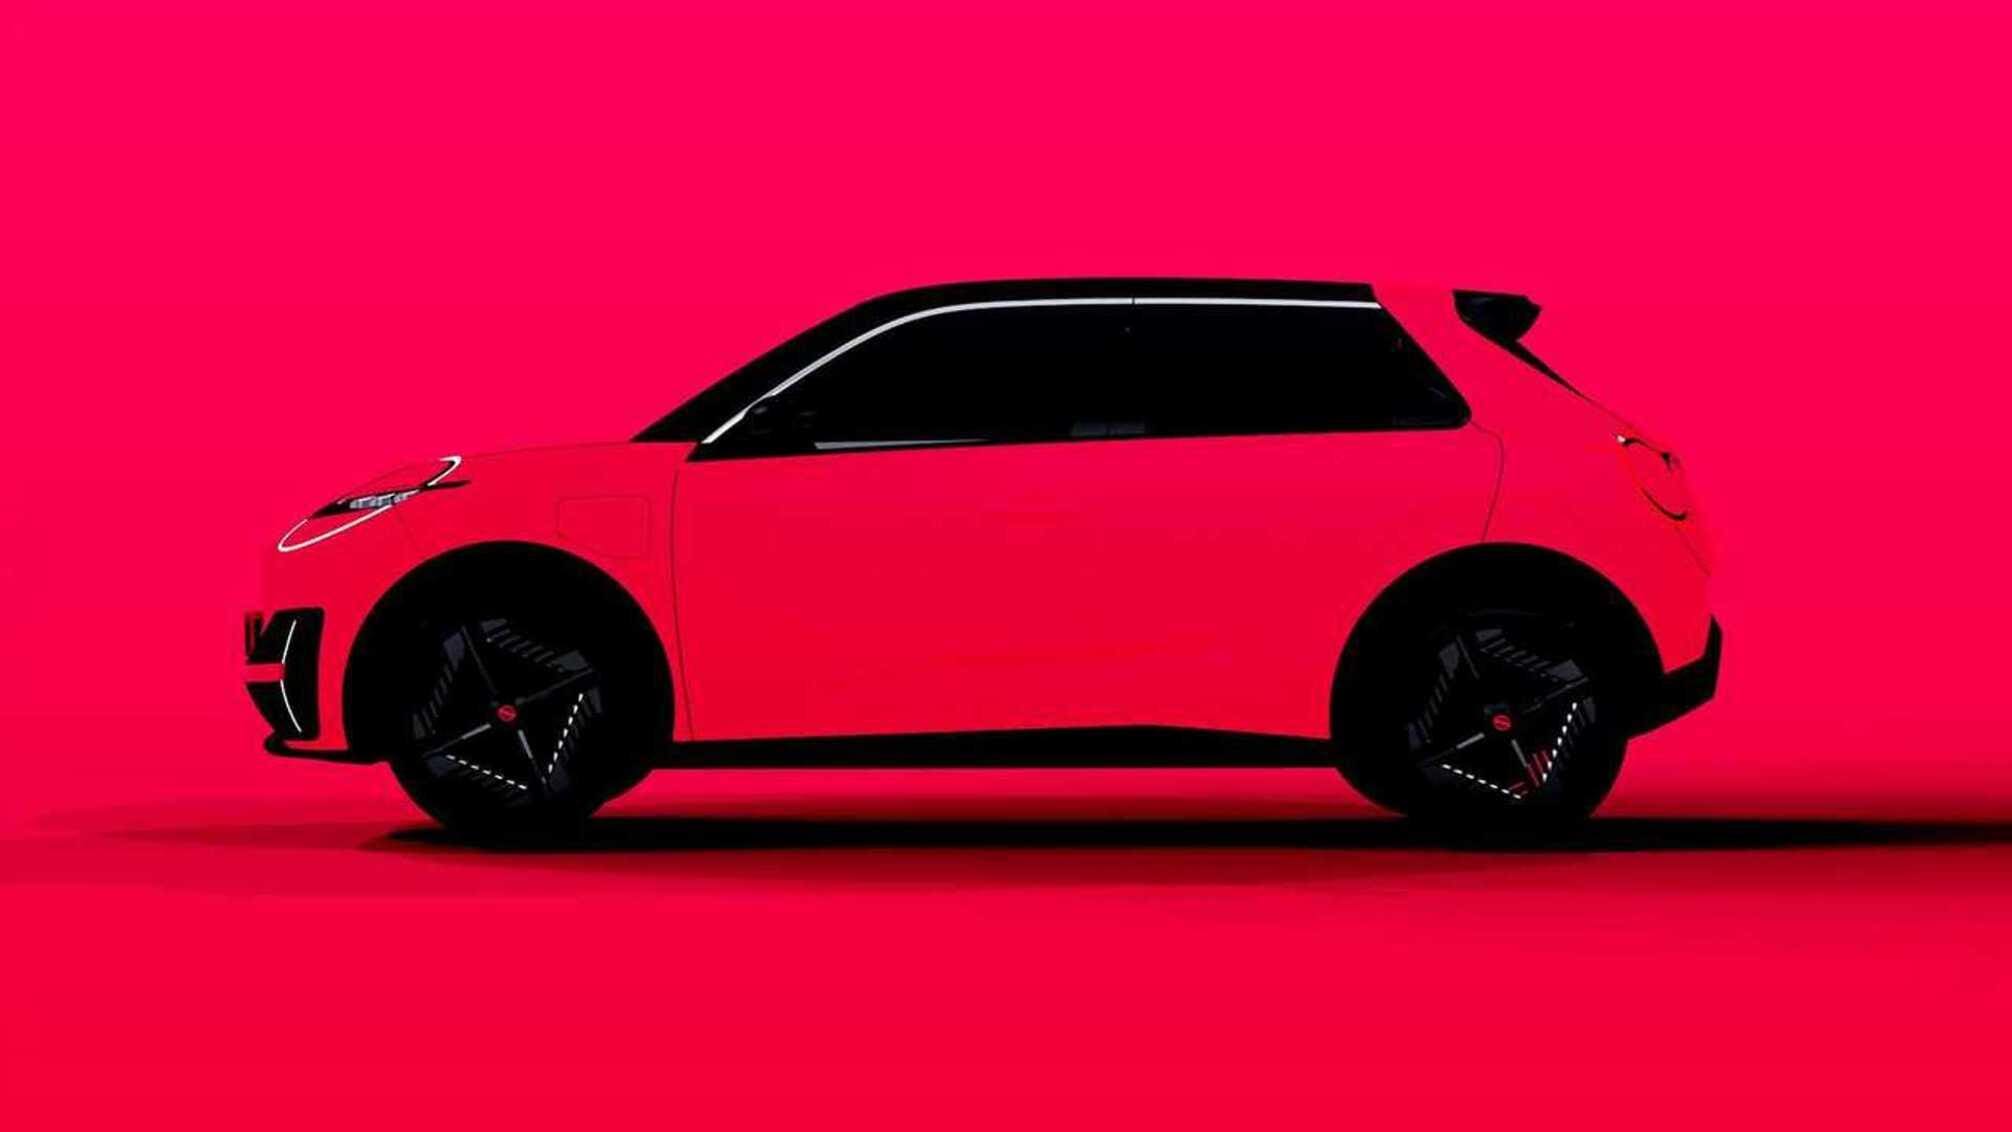 Nova geração do Nissan Micra (March) será elétrica e deve chegar ao mercado em 2026